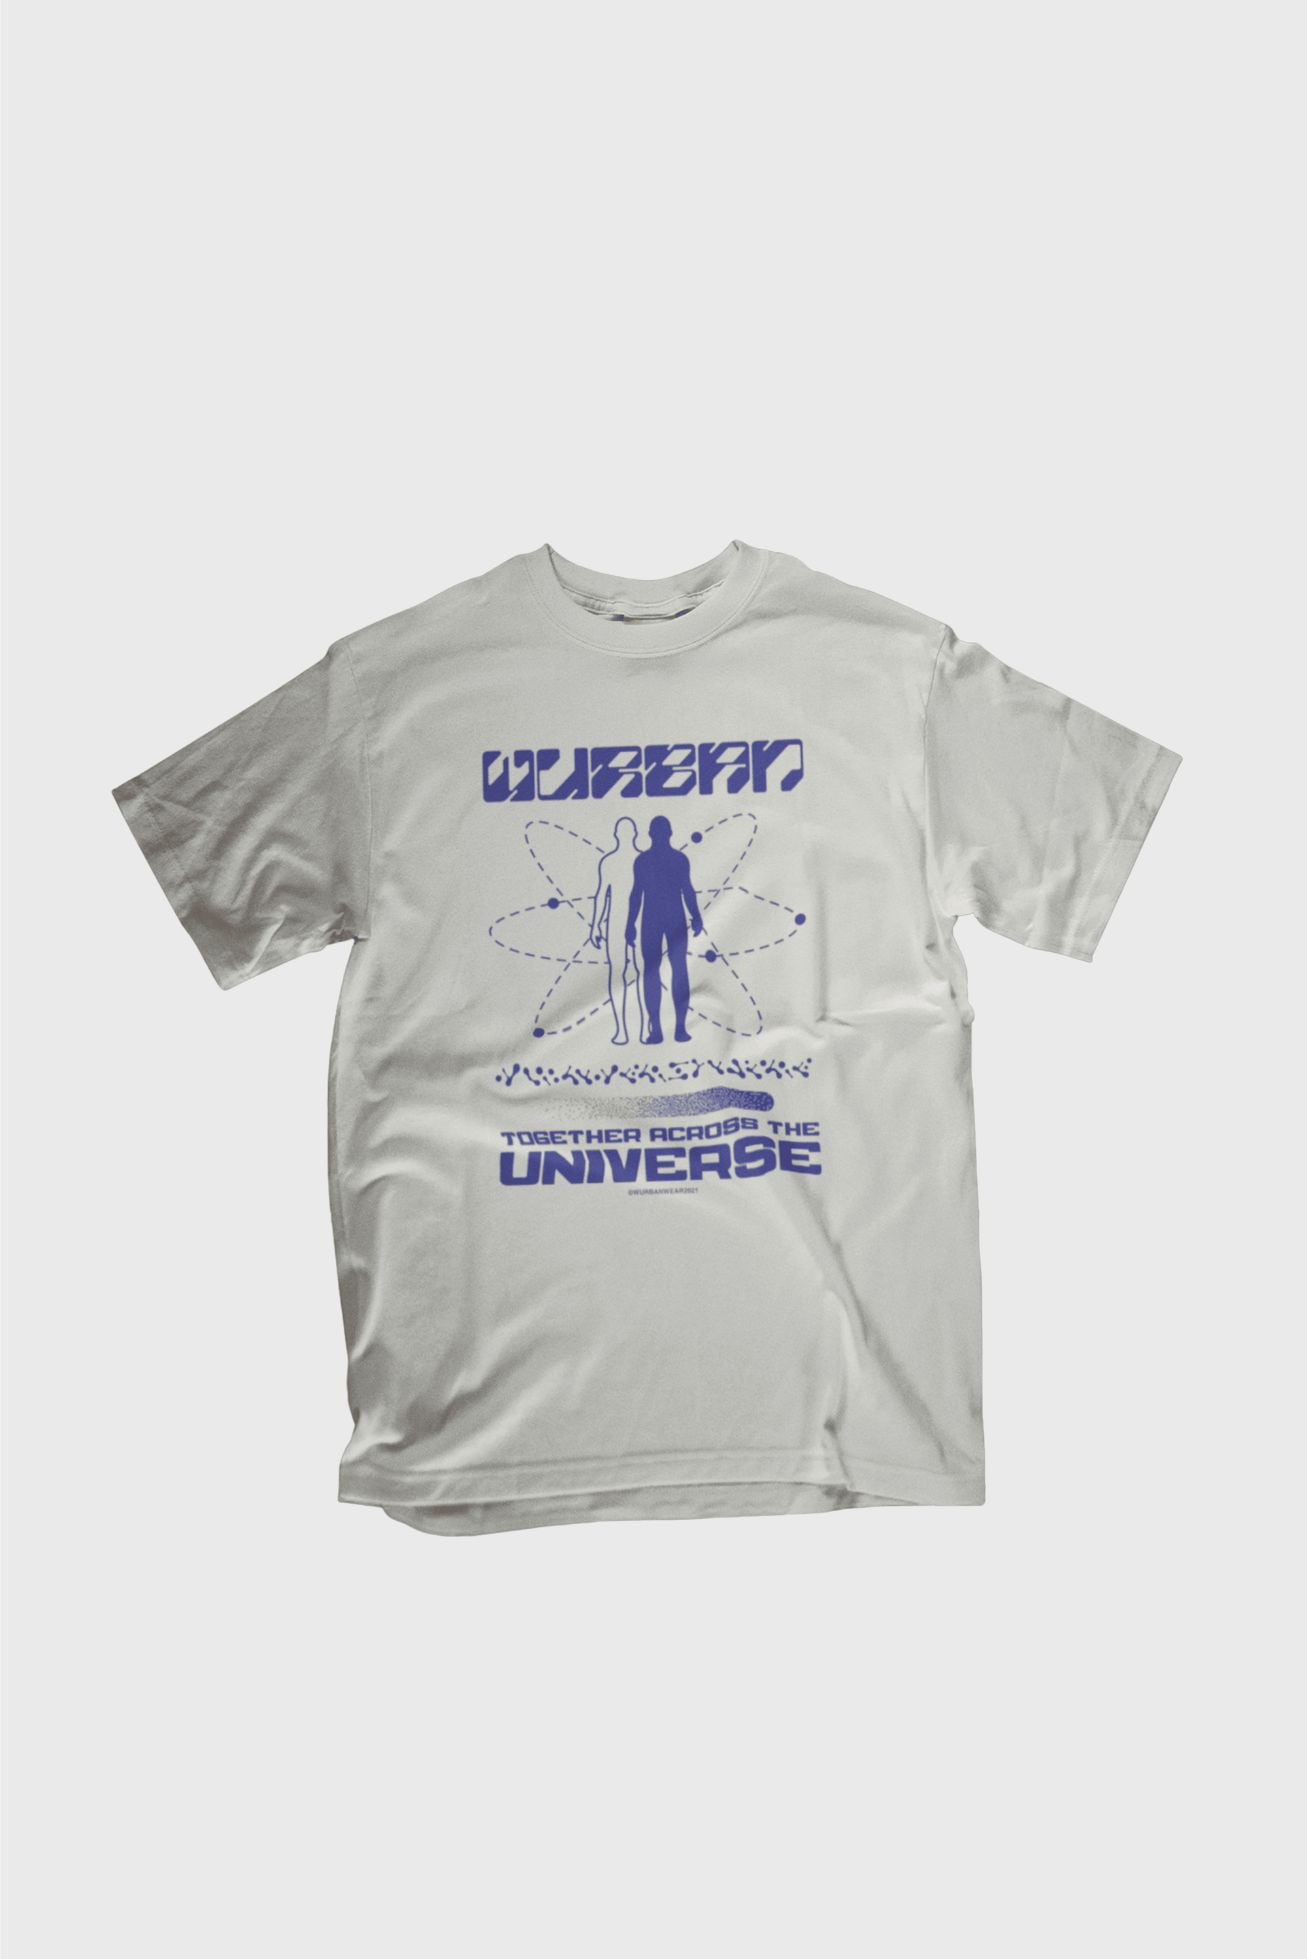 Universe oversized tshirt